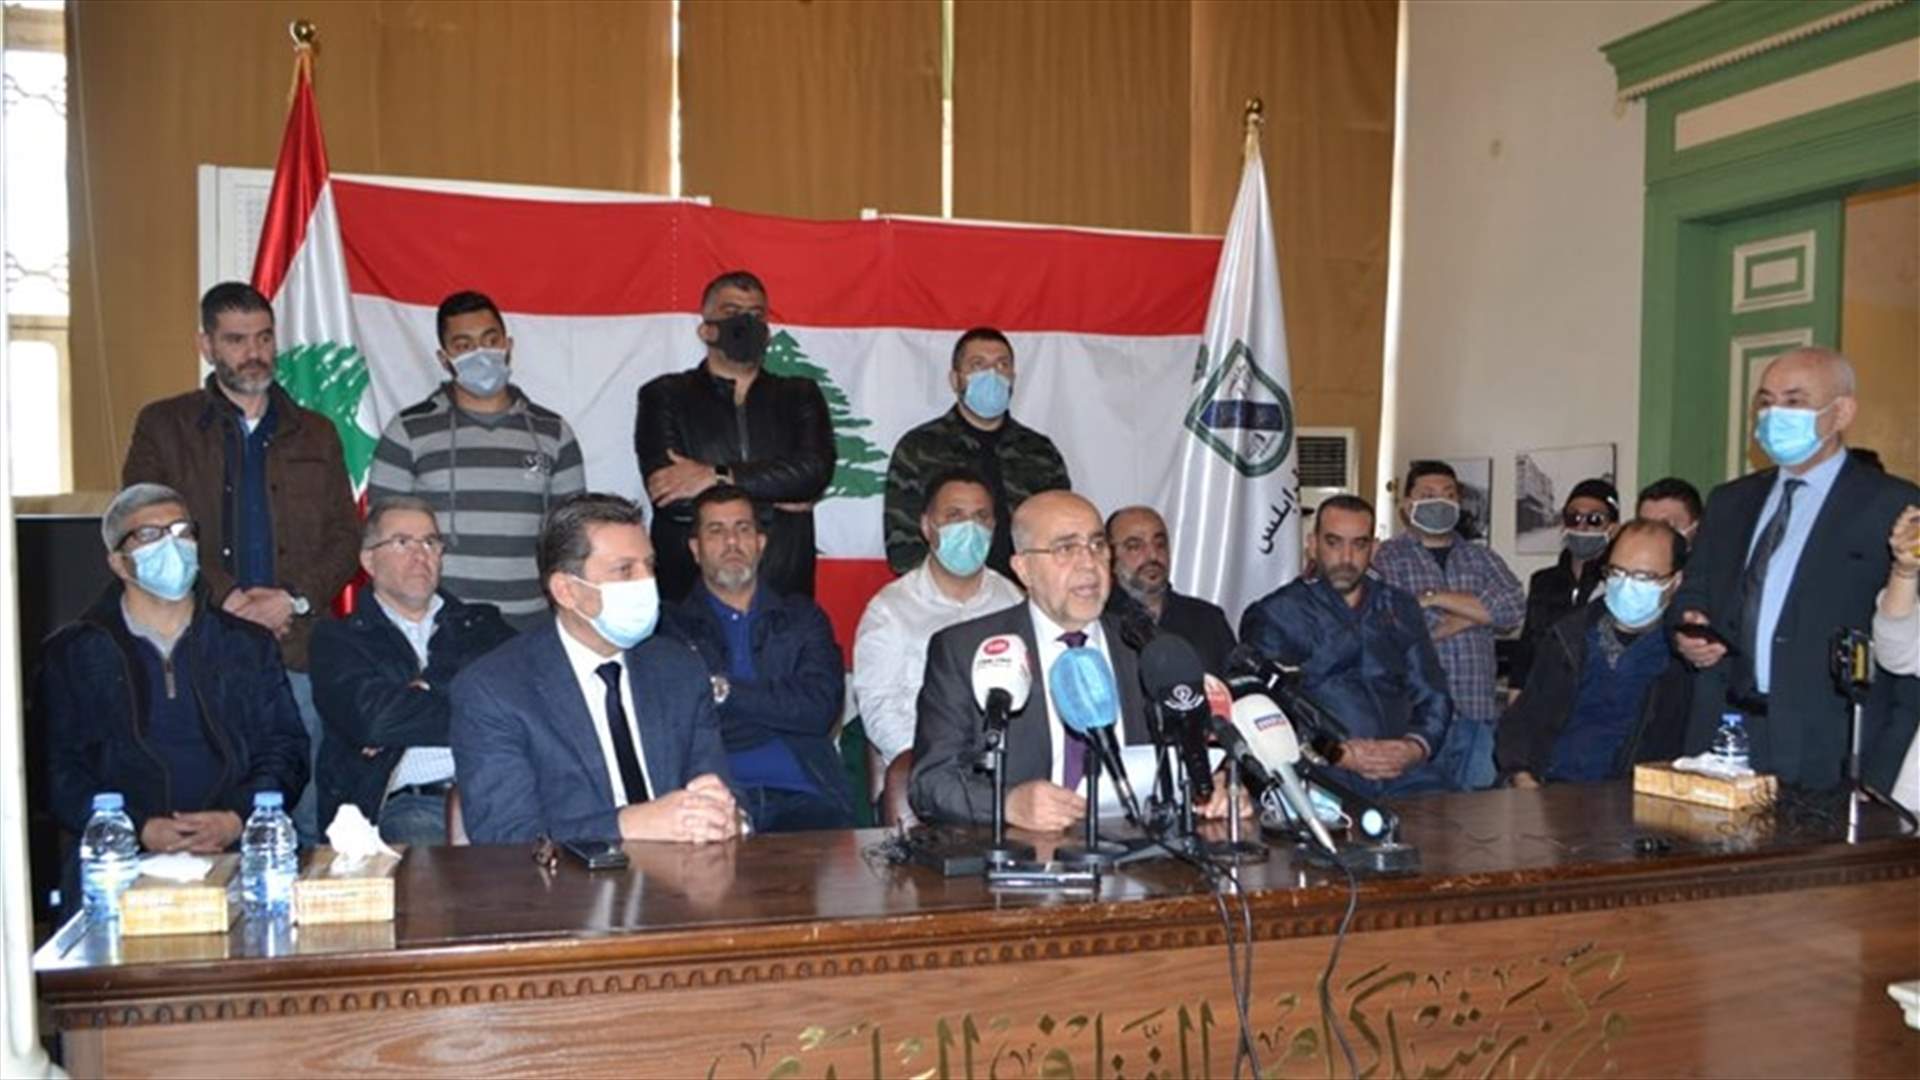 يمق: لدى محافظ الشمال نوايا مبيتة وعدوانية تجاه طرابلس وأهلها